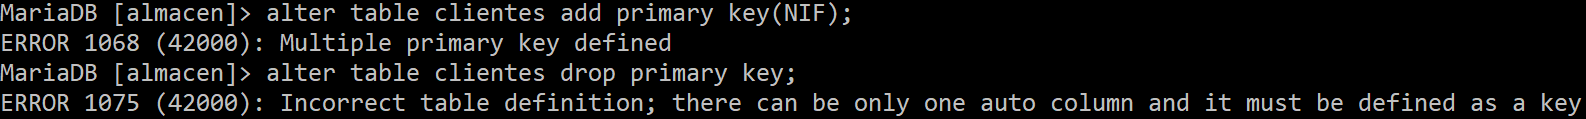 Problemas al intentar eliminar la clave primary key en Mysql